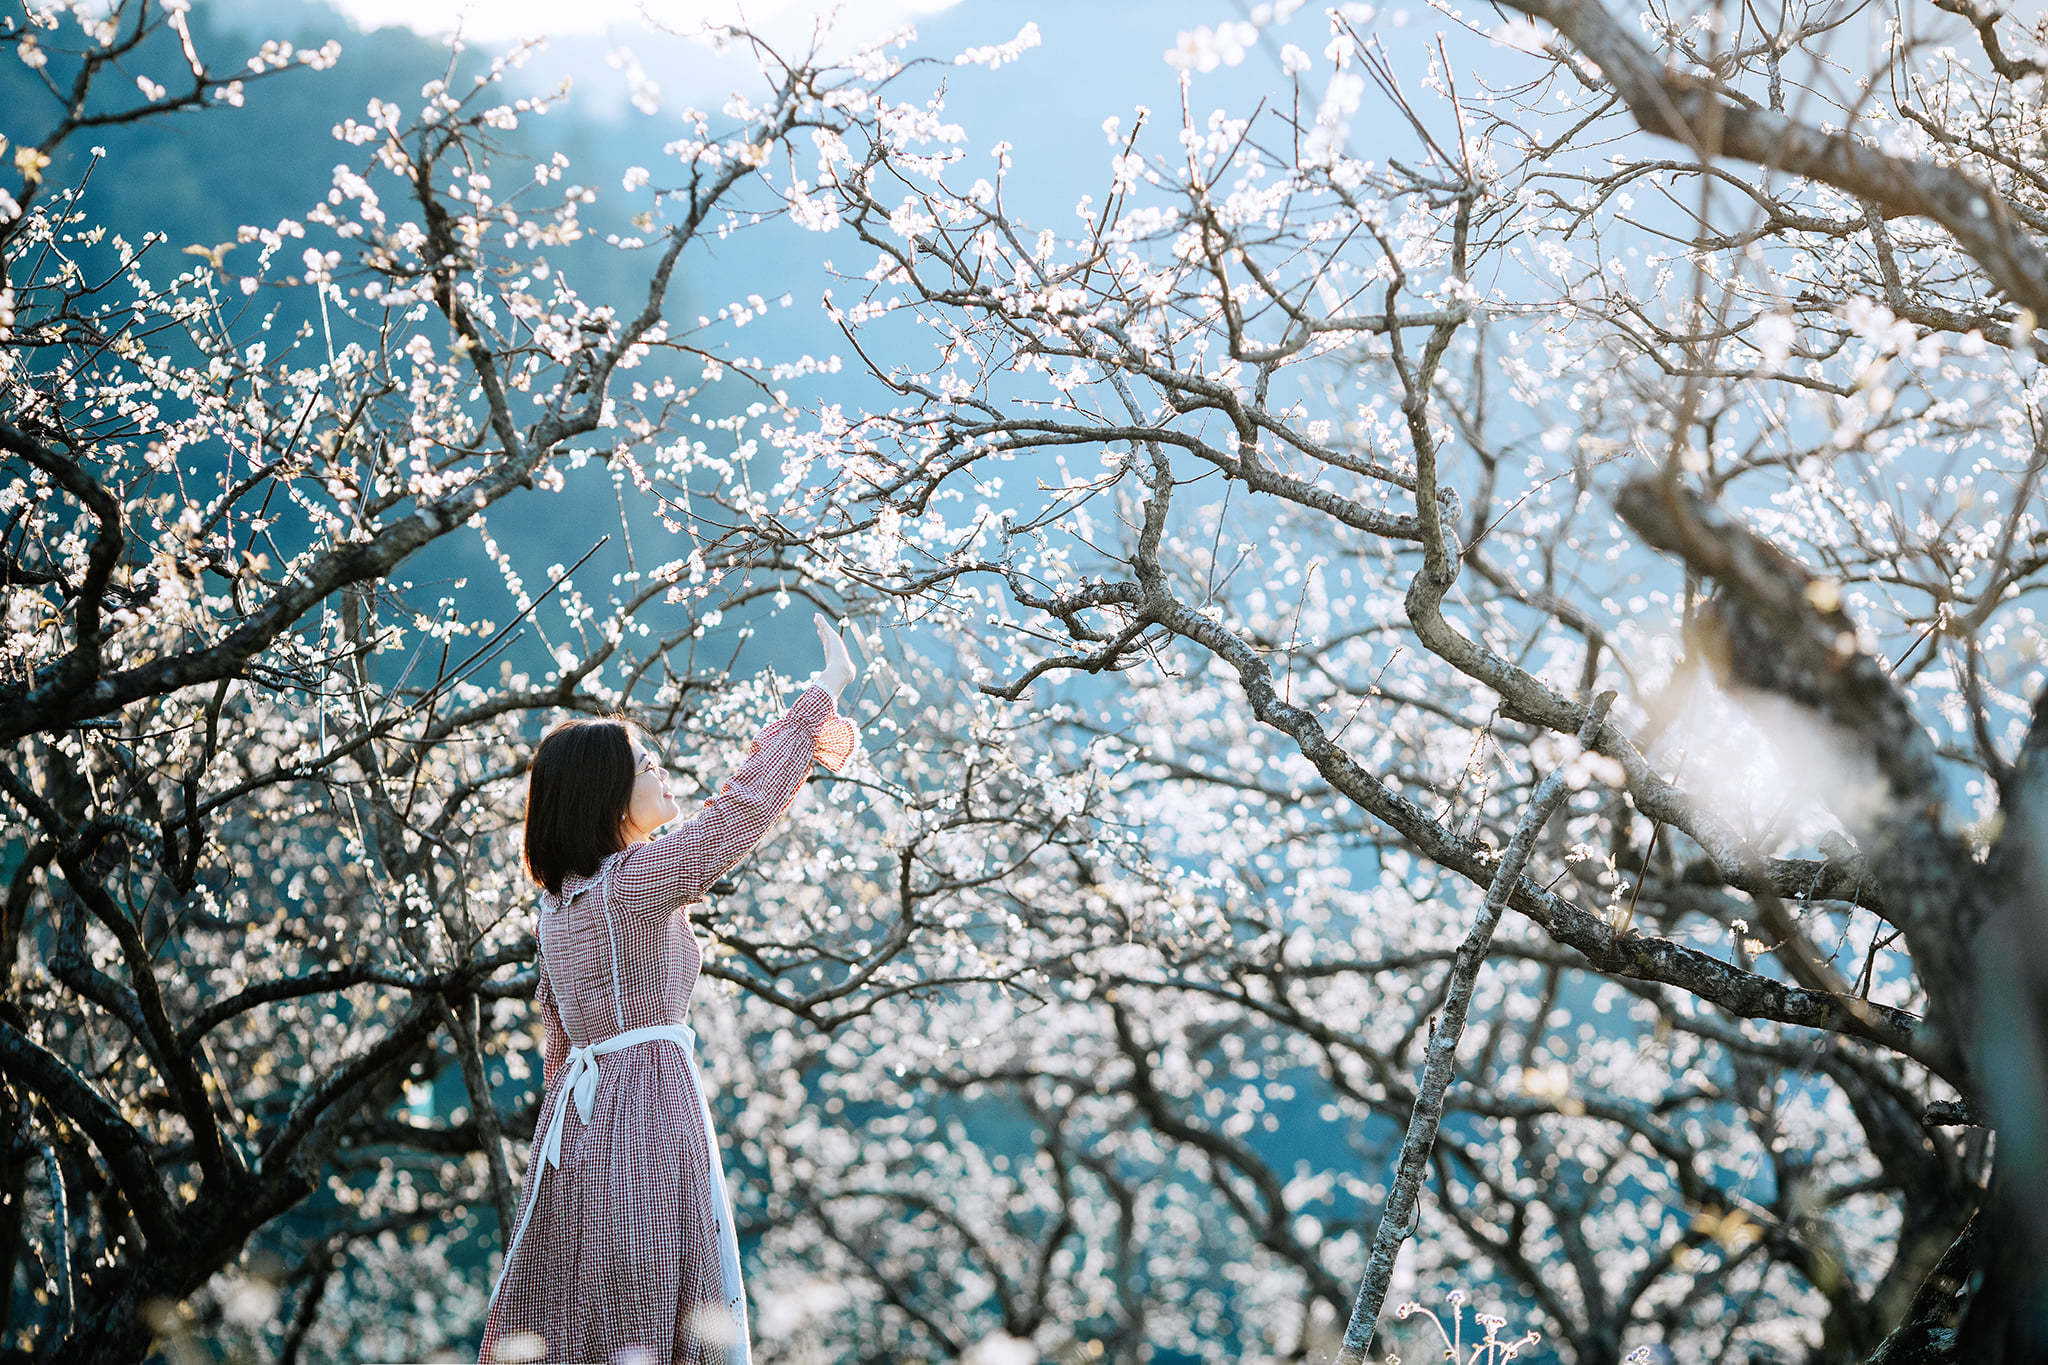 Điểm đẹp nhất để ngắm trọn mùa hoa mận Mộc Châu khoe sắc - 1